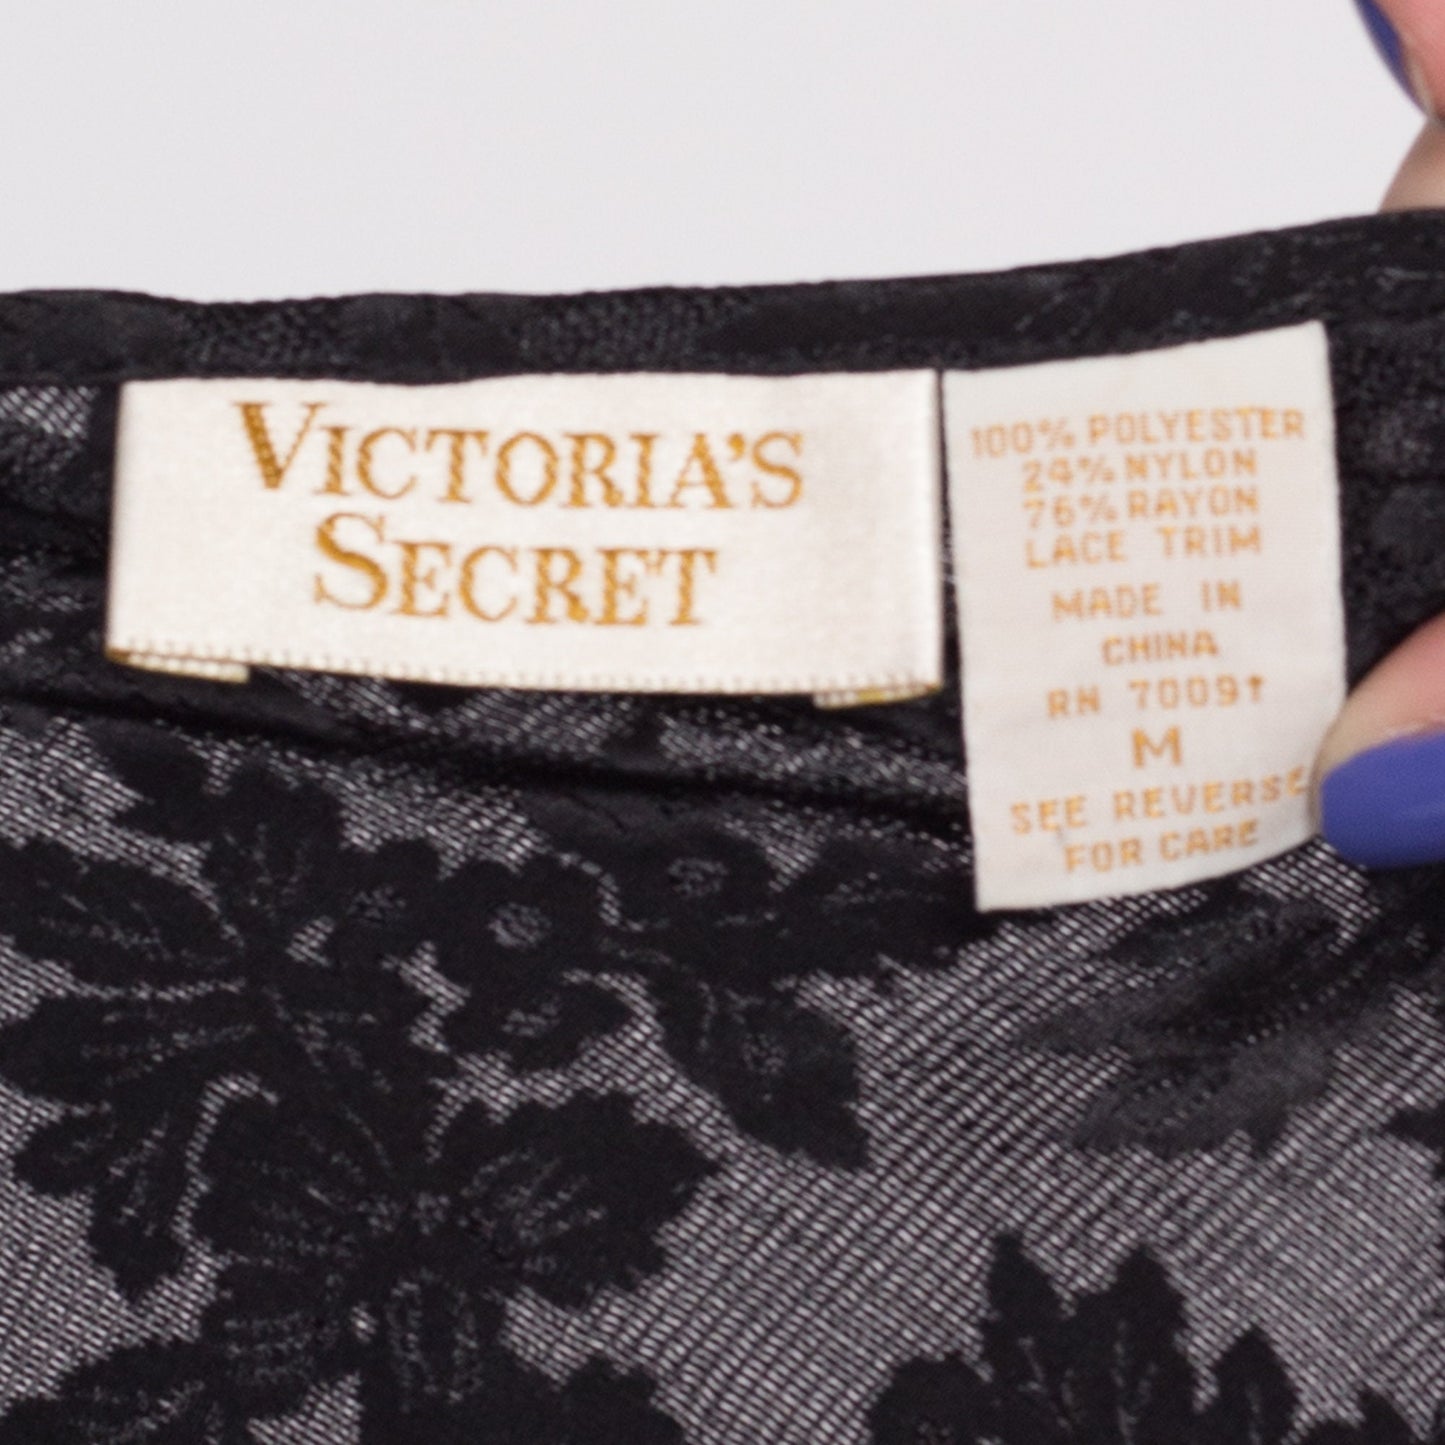 M| 90s Victoria's Secret Black Lingerie Slip Top - Medium | Vintage Lace Trim Floral Jacquard Satin Camisole Tank